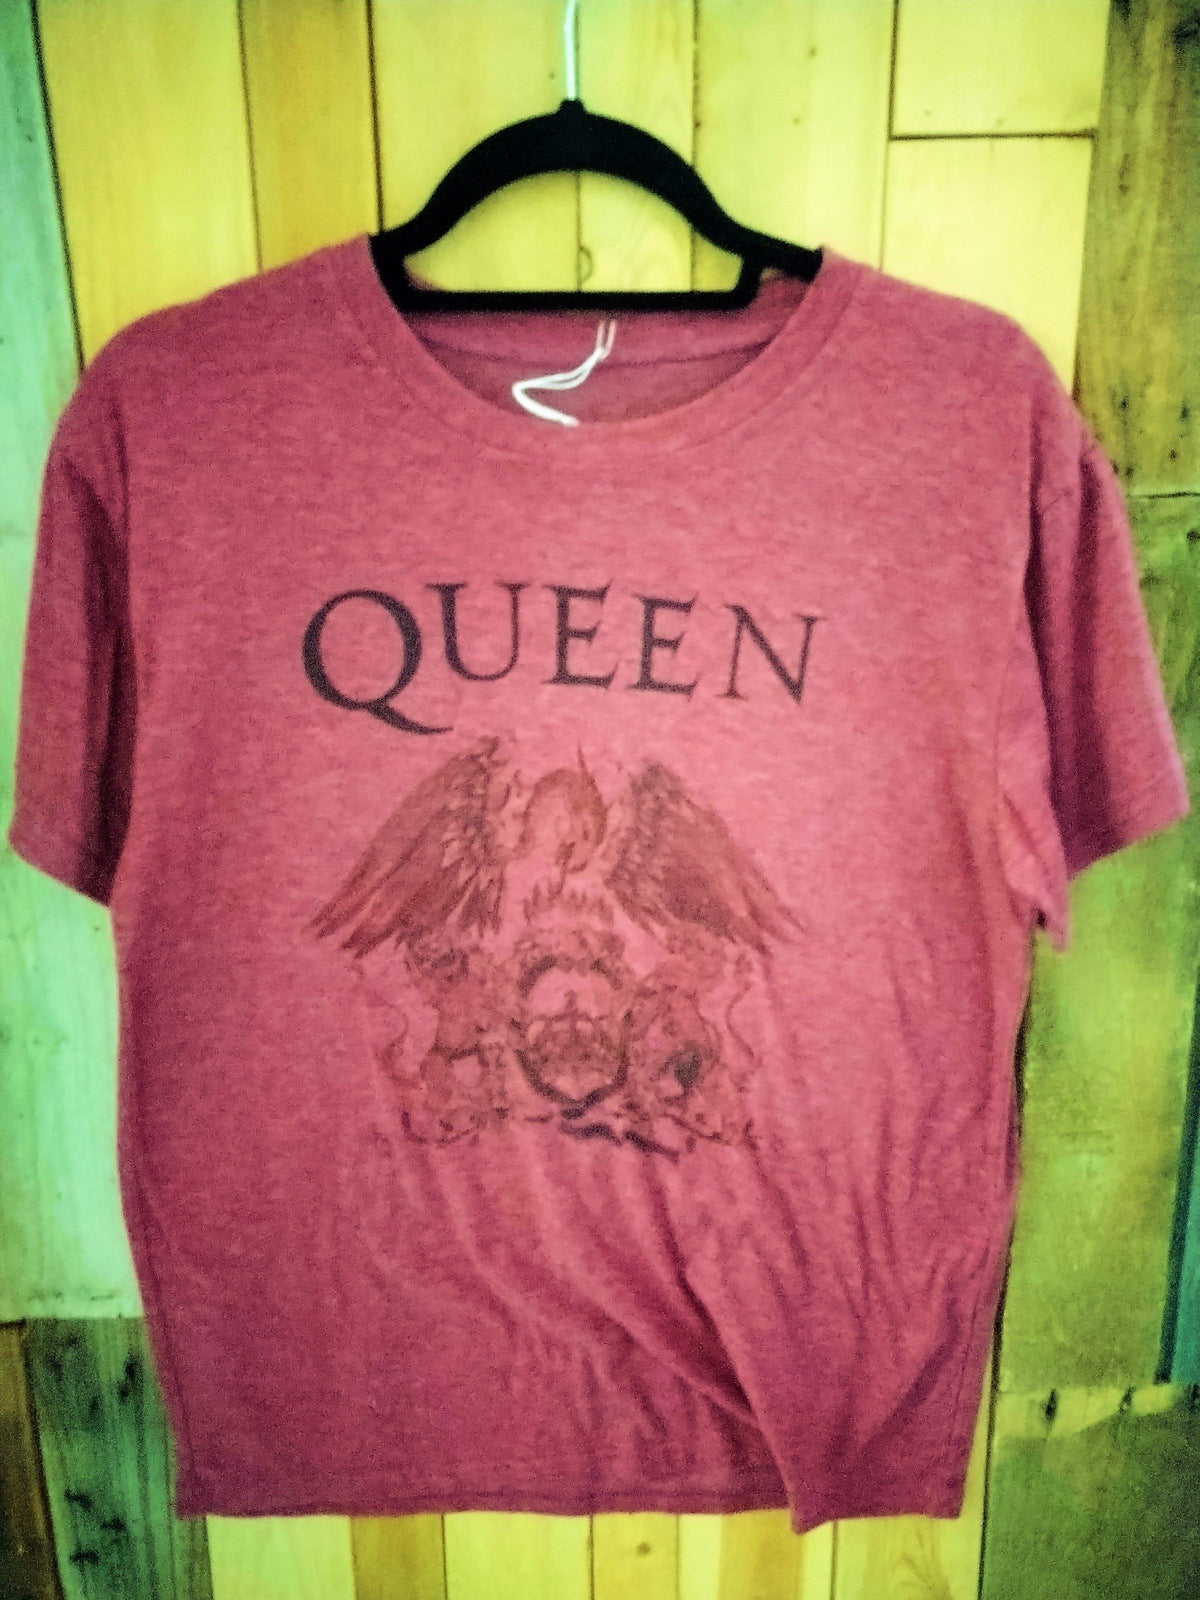 Queen Official Merch- Label Faded- T Shirt Size Medium